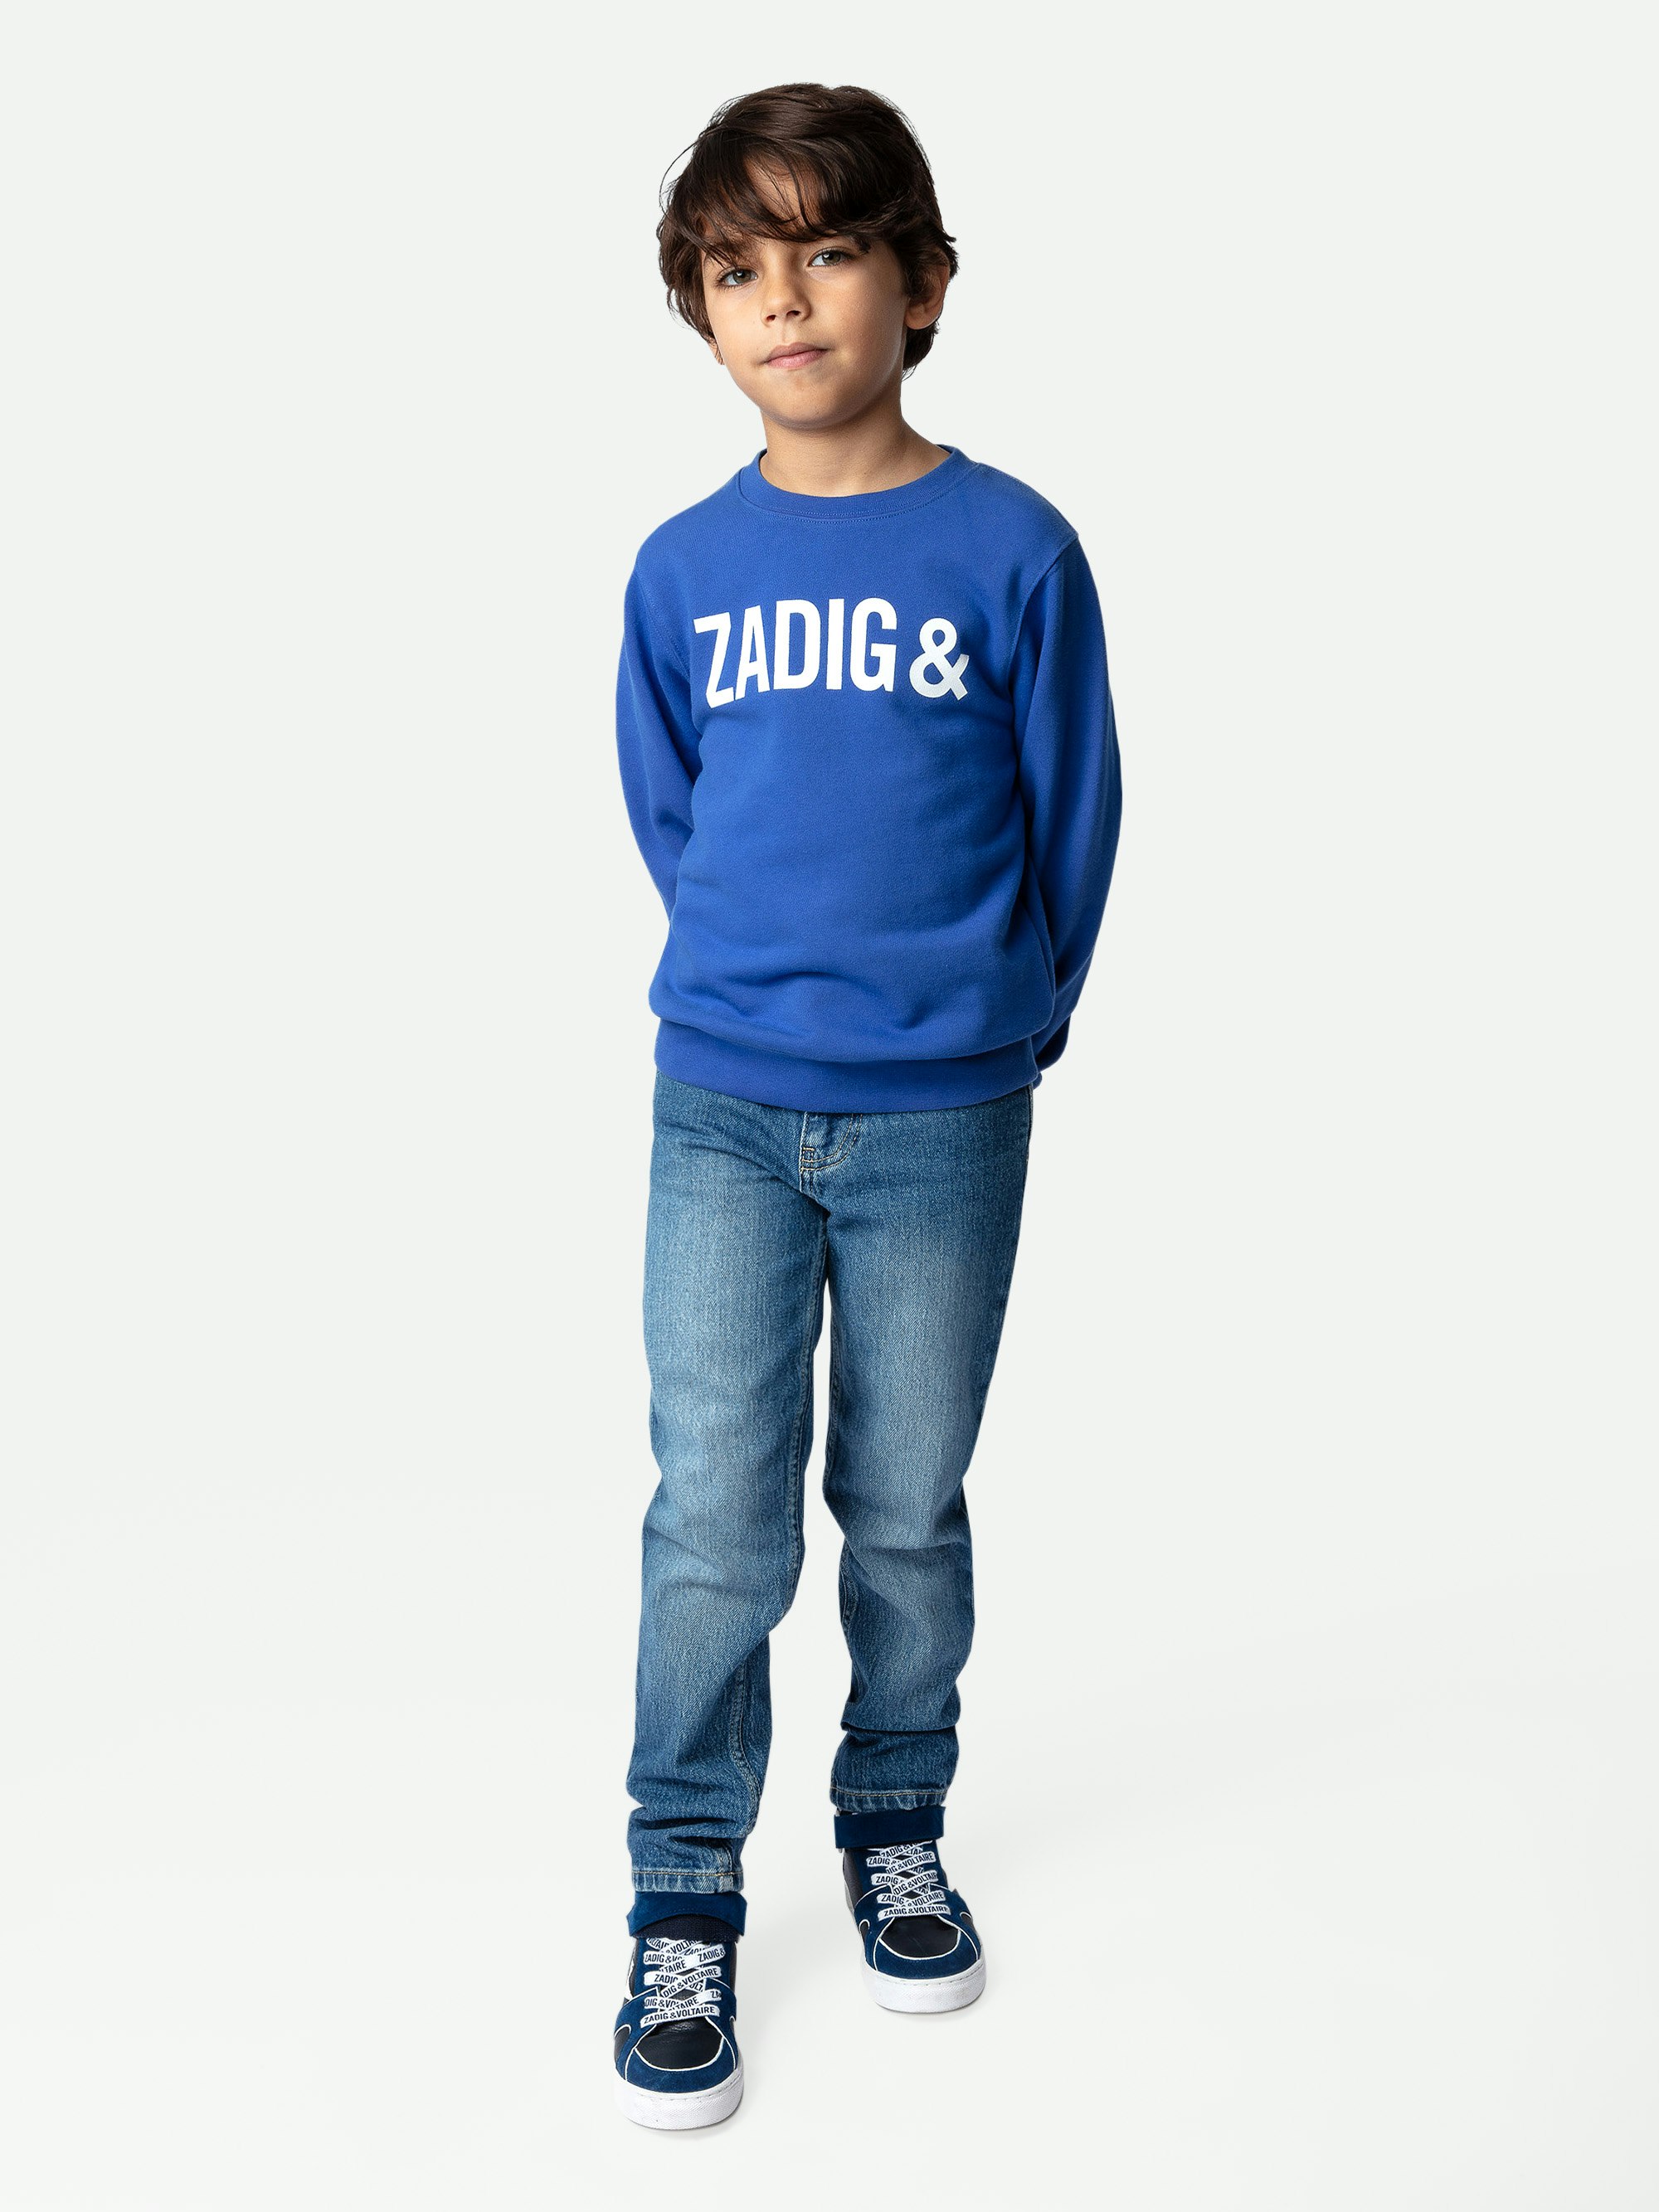 Sweatshirt Simba Garçon - Sweatshirt garçon en coton molletonné bleu orné du logo à l'avant et au dos.